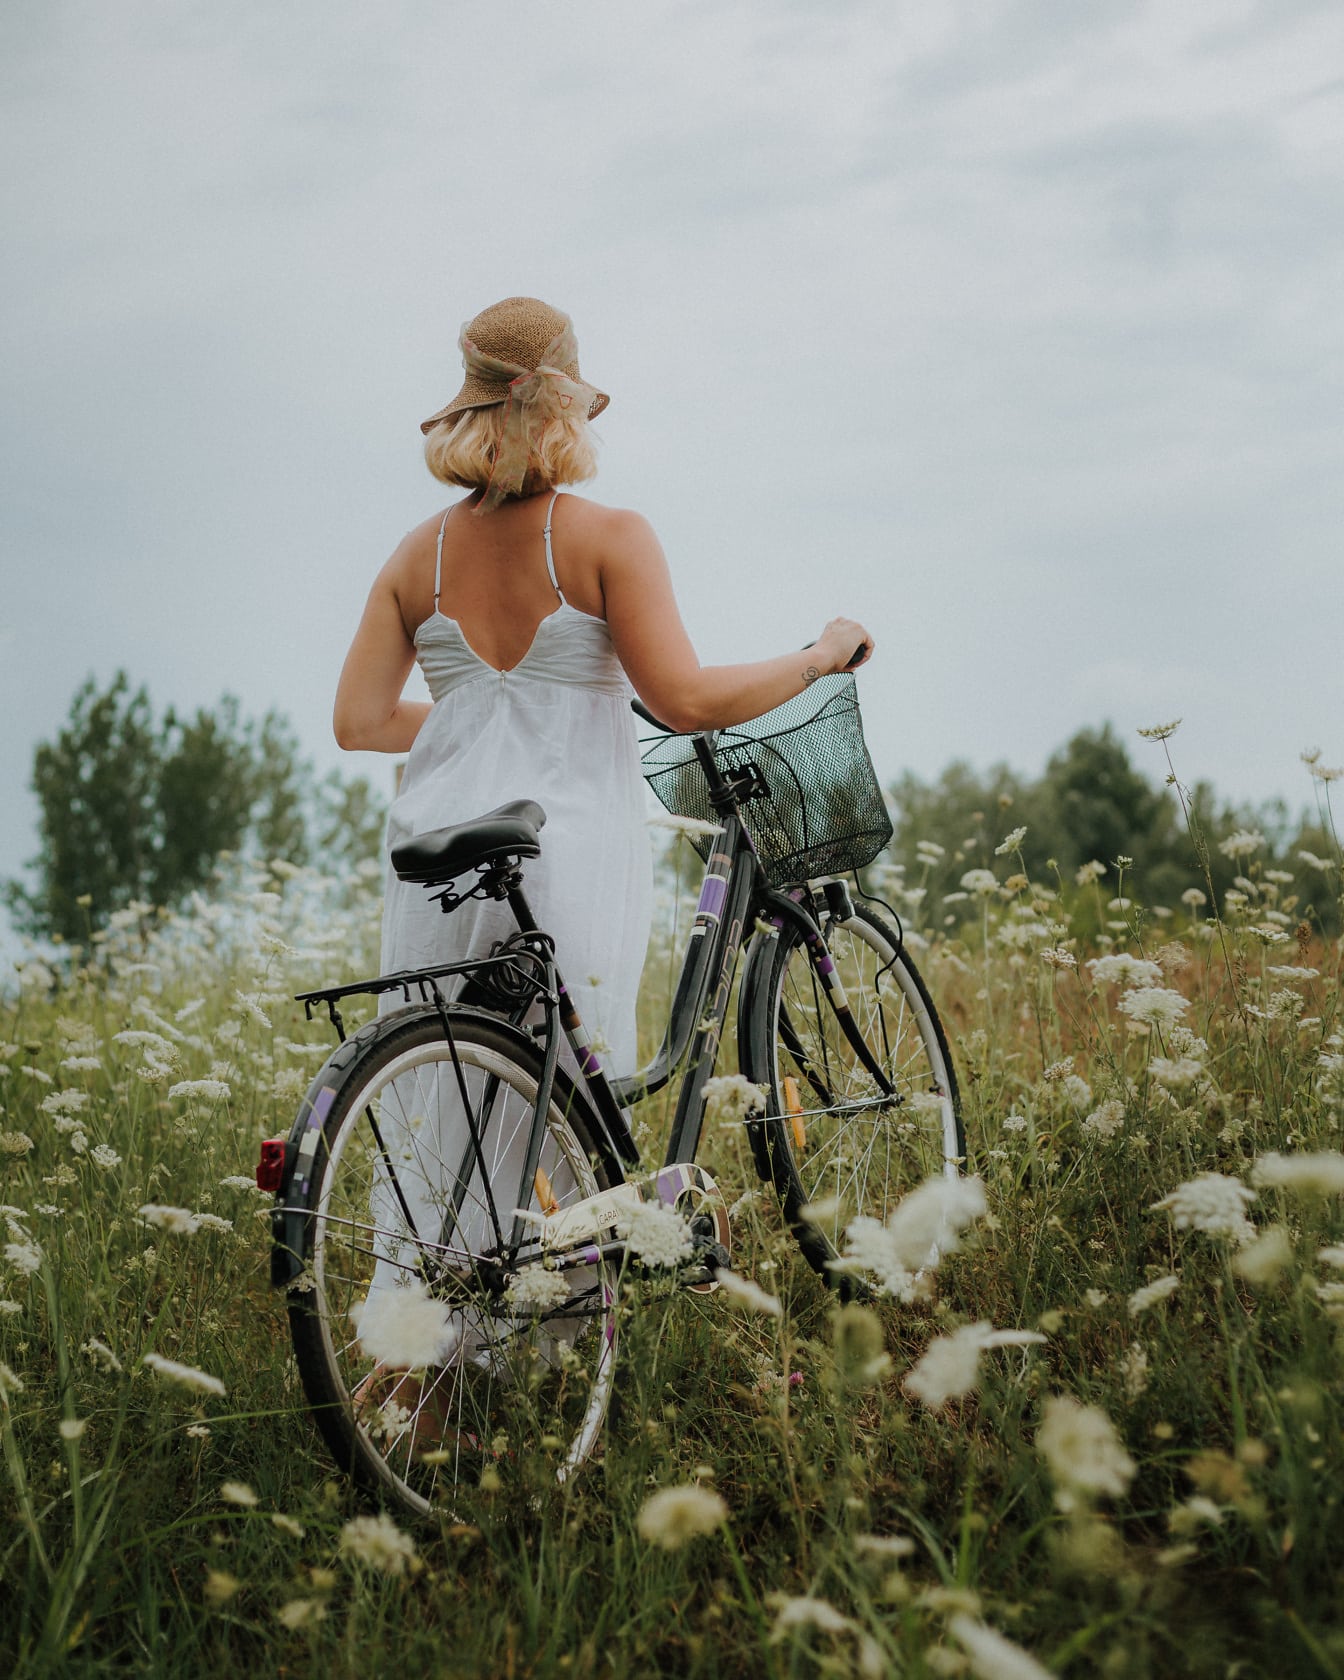 หญิงสาวชนบทในชุดสีขาวกับจักรยานในทุ่งดอกไม้